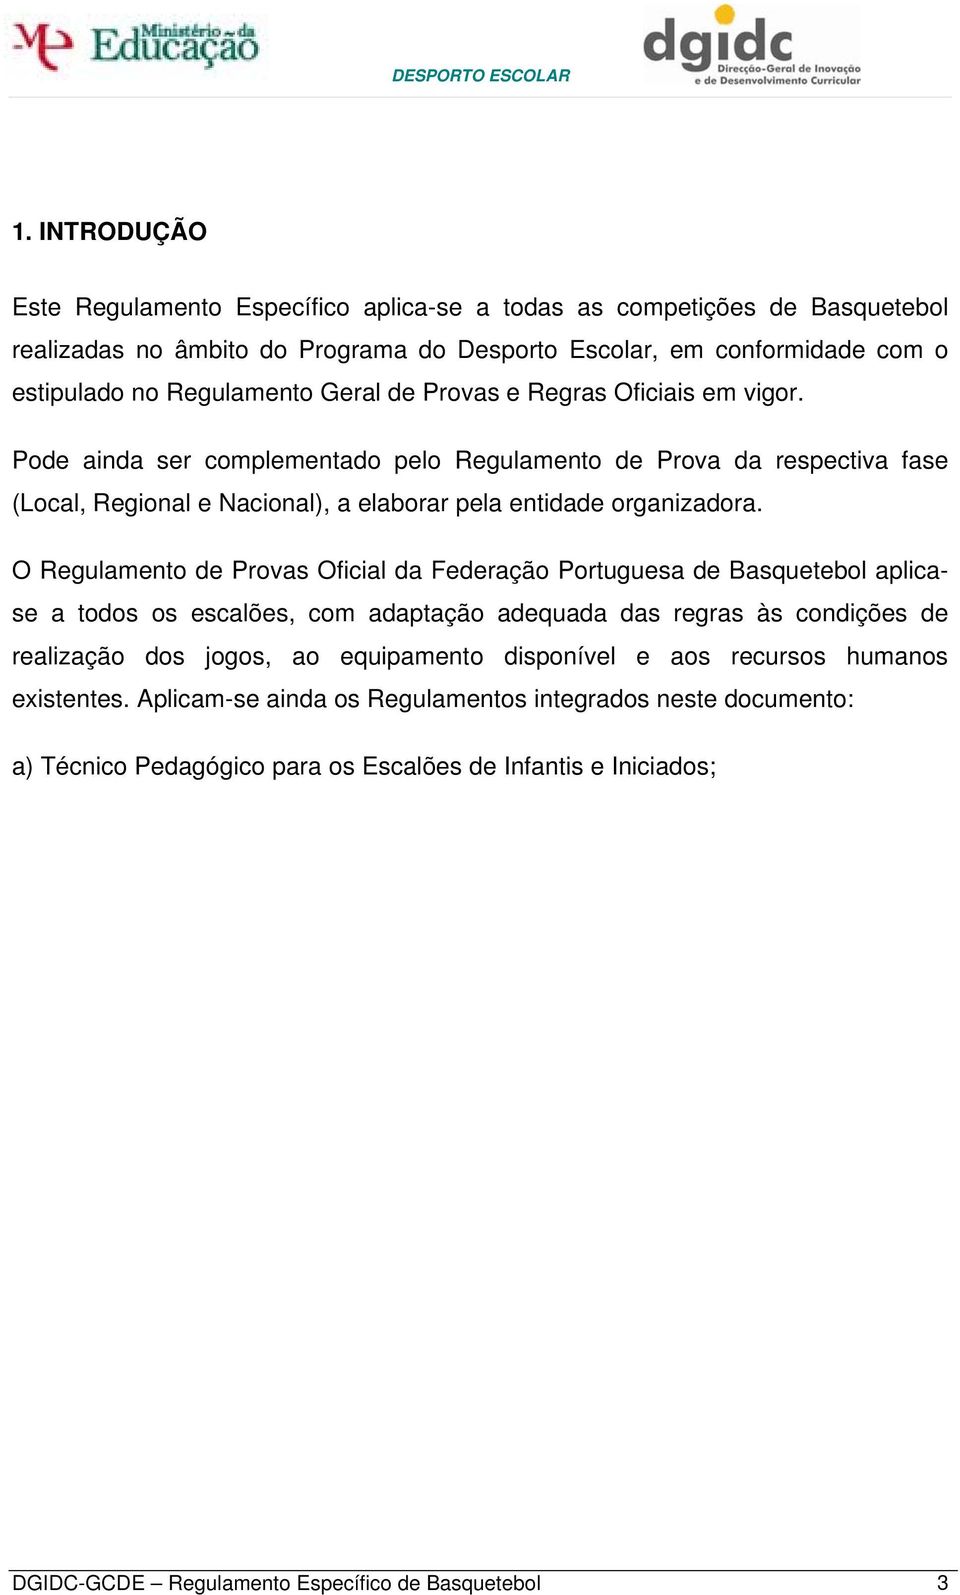 O Regulamento de Provas Oficial da Federação Portuguesa de Basquetebol aplicase a todos os escalões, com adaptação adequada das regras às condições de realização dos jogos, ao equipamento